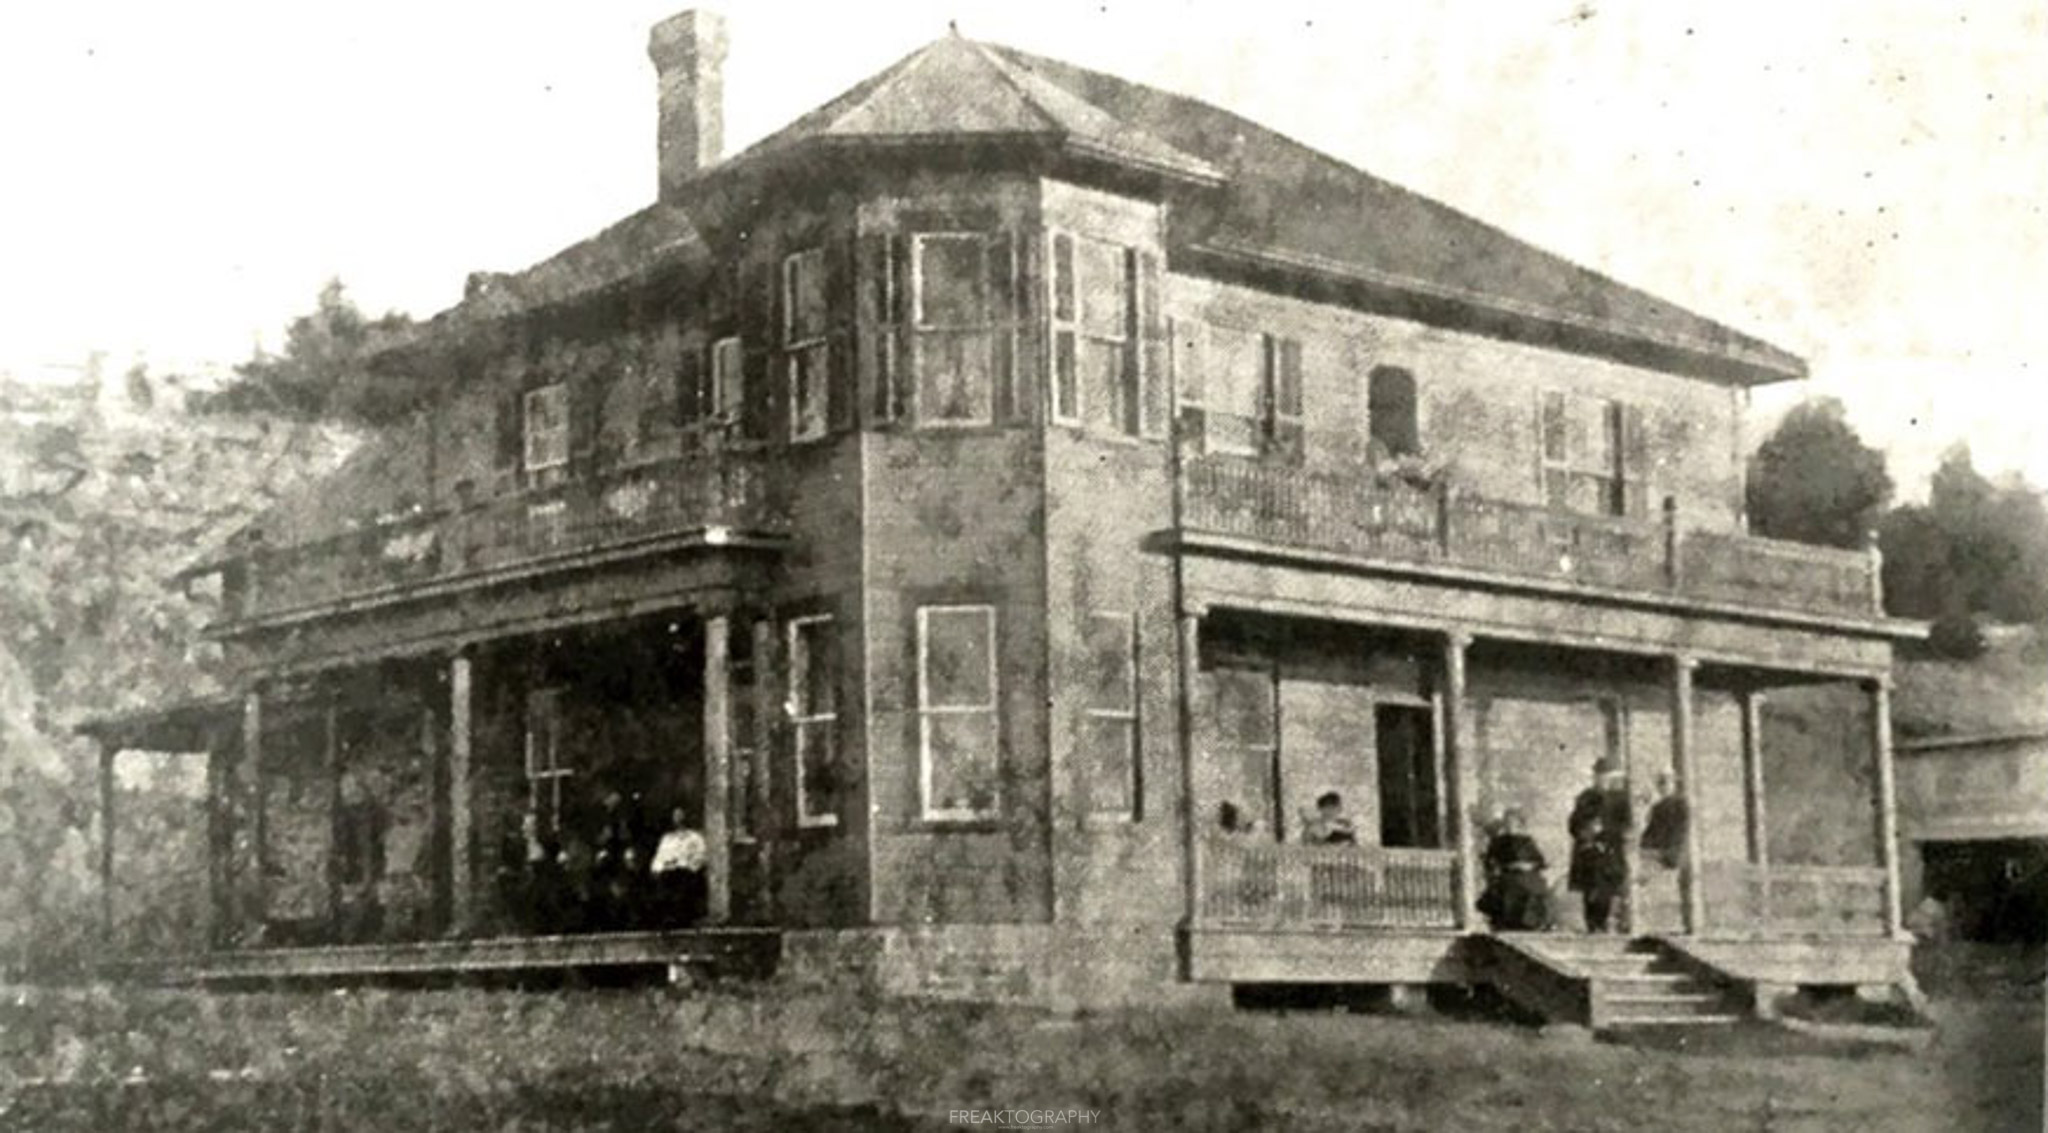 Rockcliffe tavern 1800's